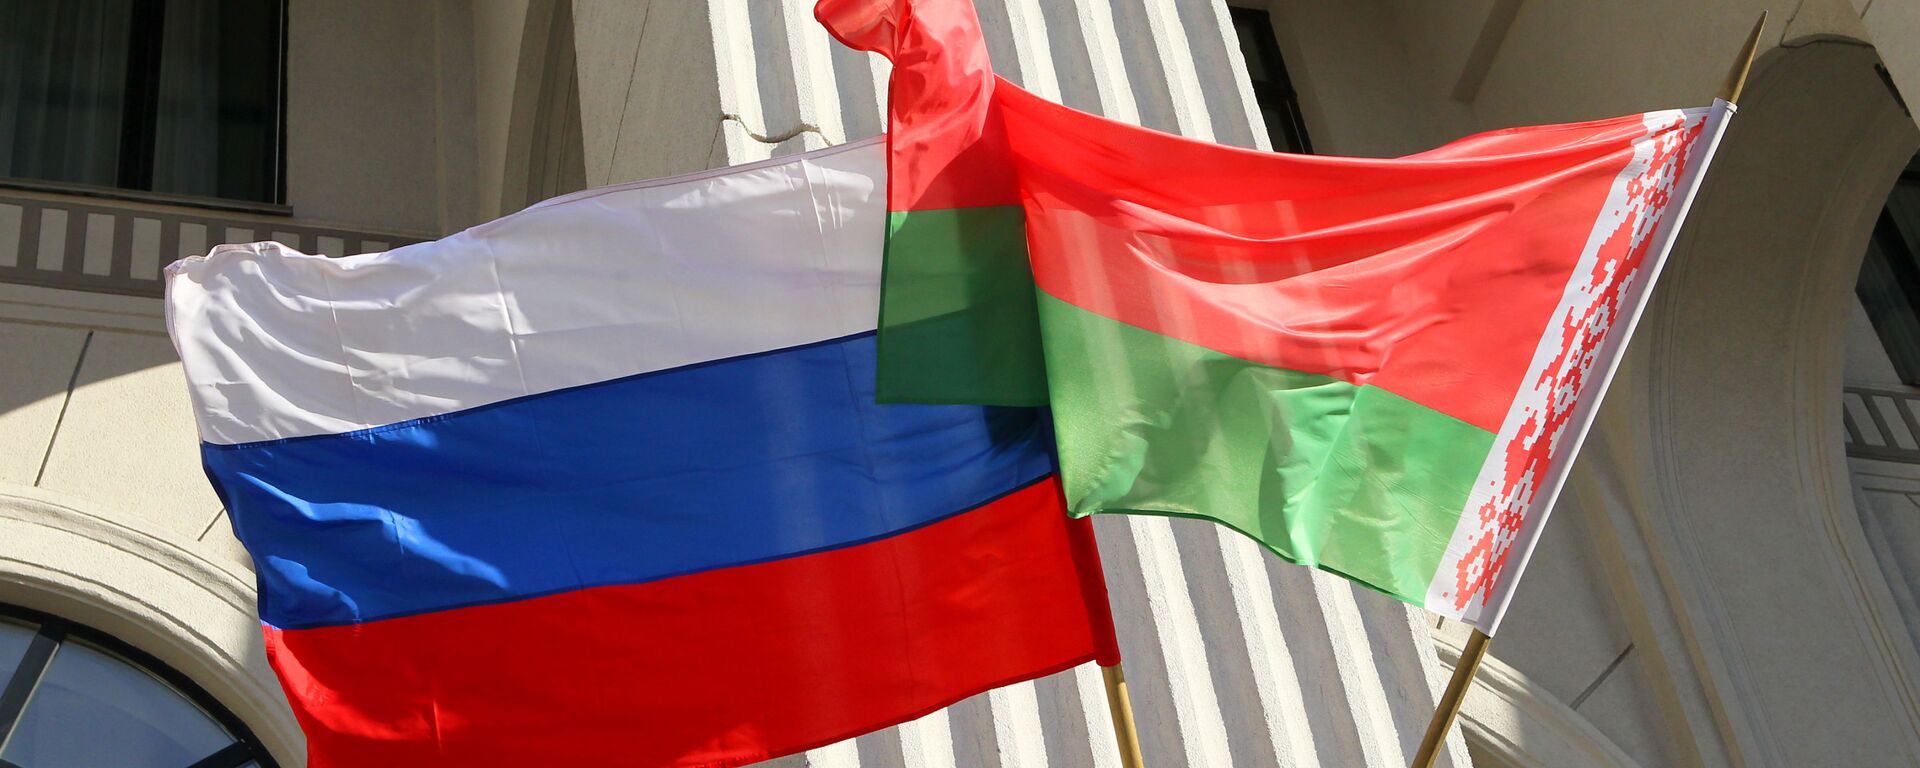 Rusijos ir Baltarusijos vėliavos - Sputnik Lietuva, 1920, 20.06.2021